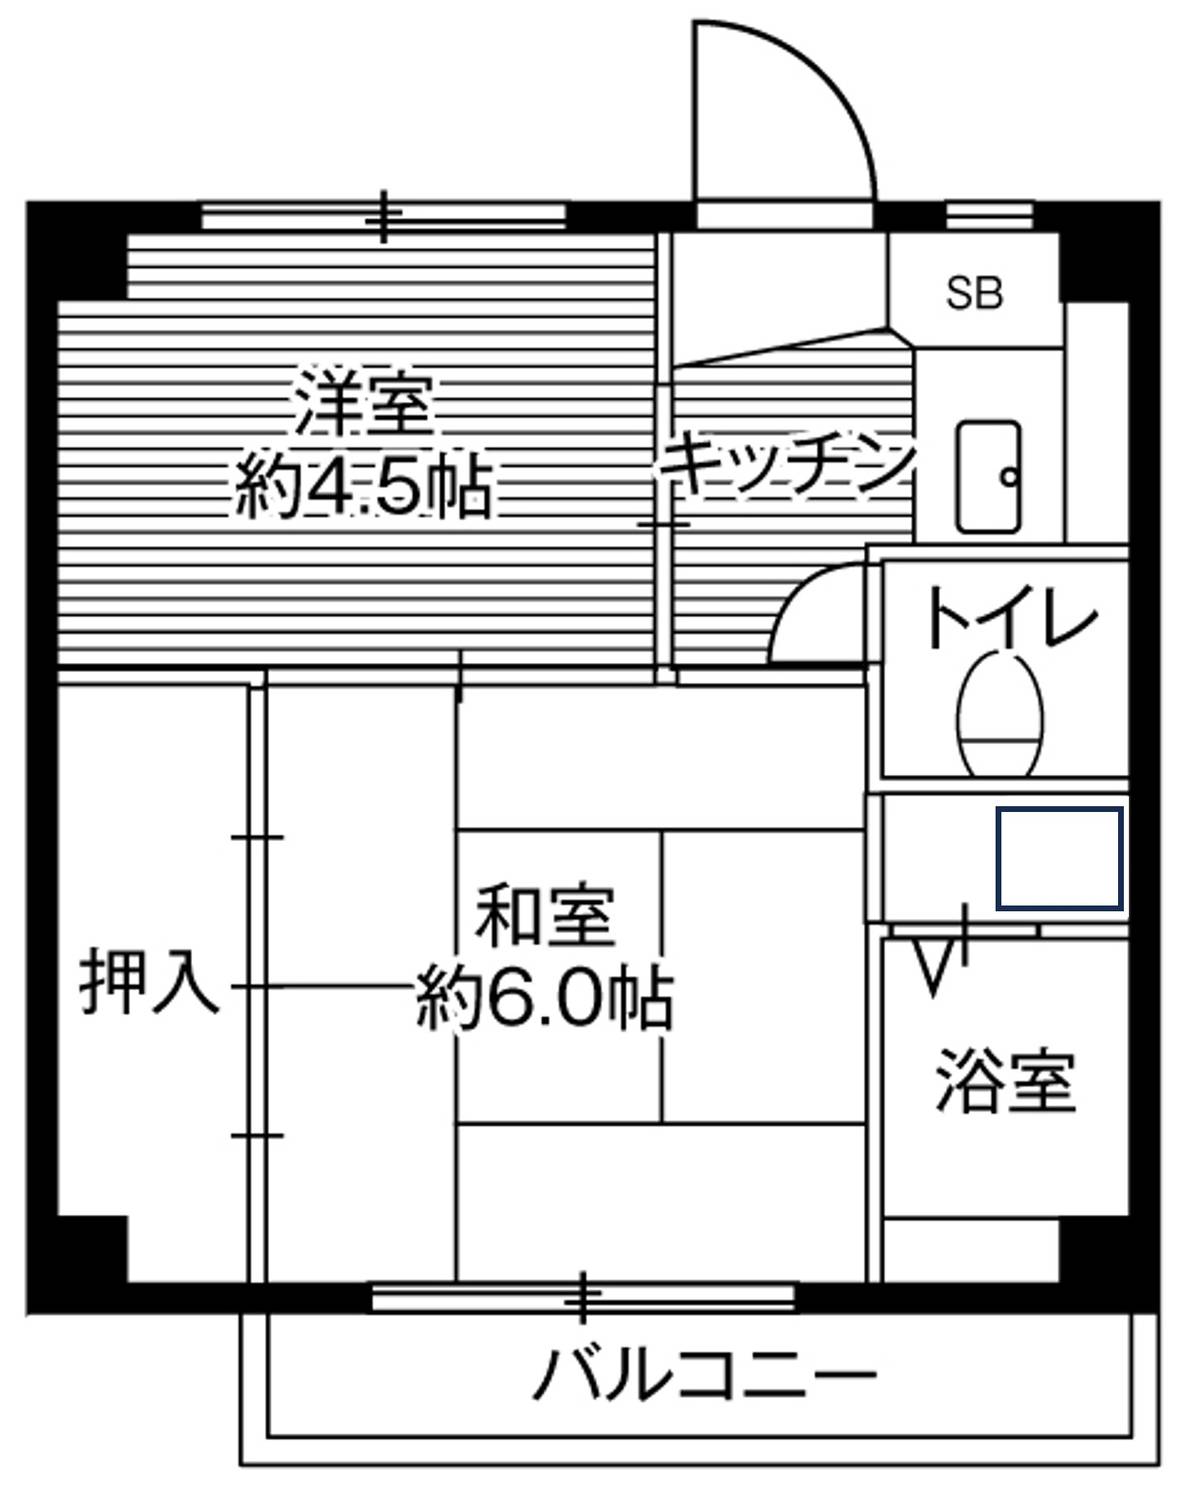 位于藤沢市的Village House 亀井野的平面图2K